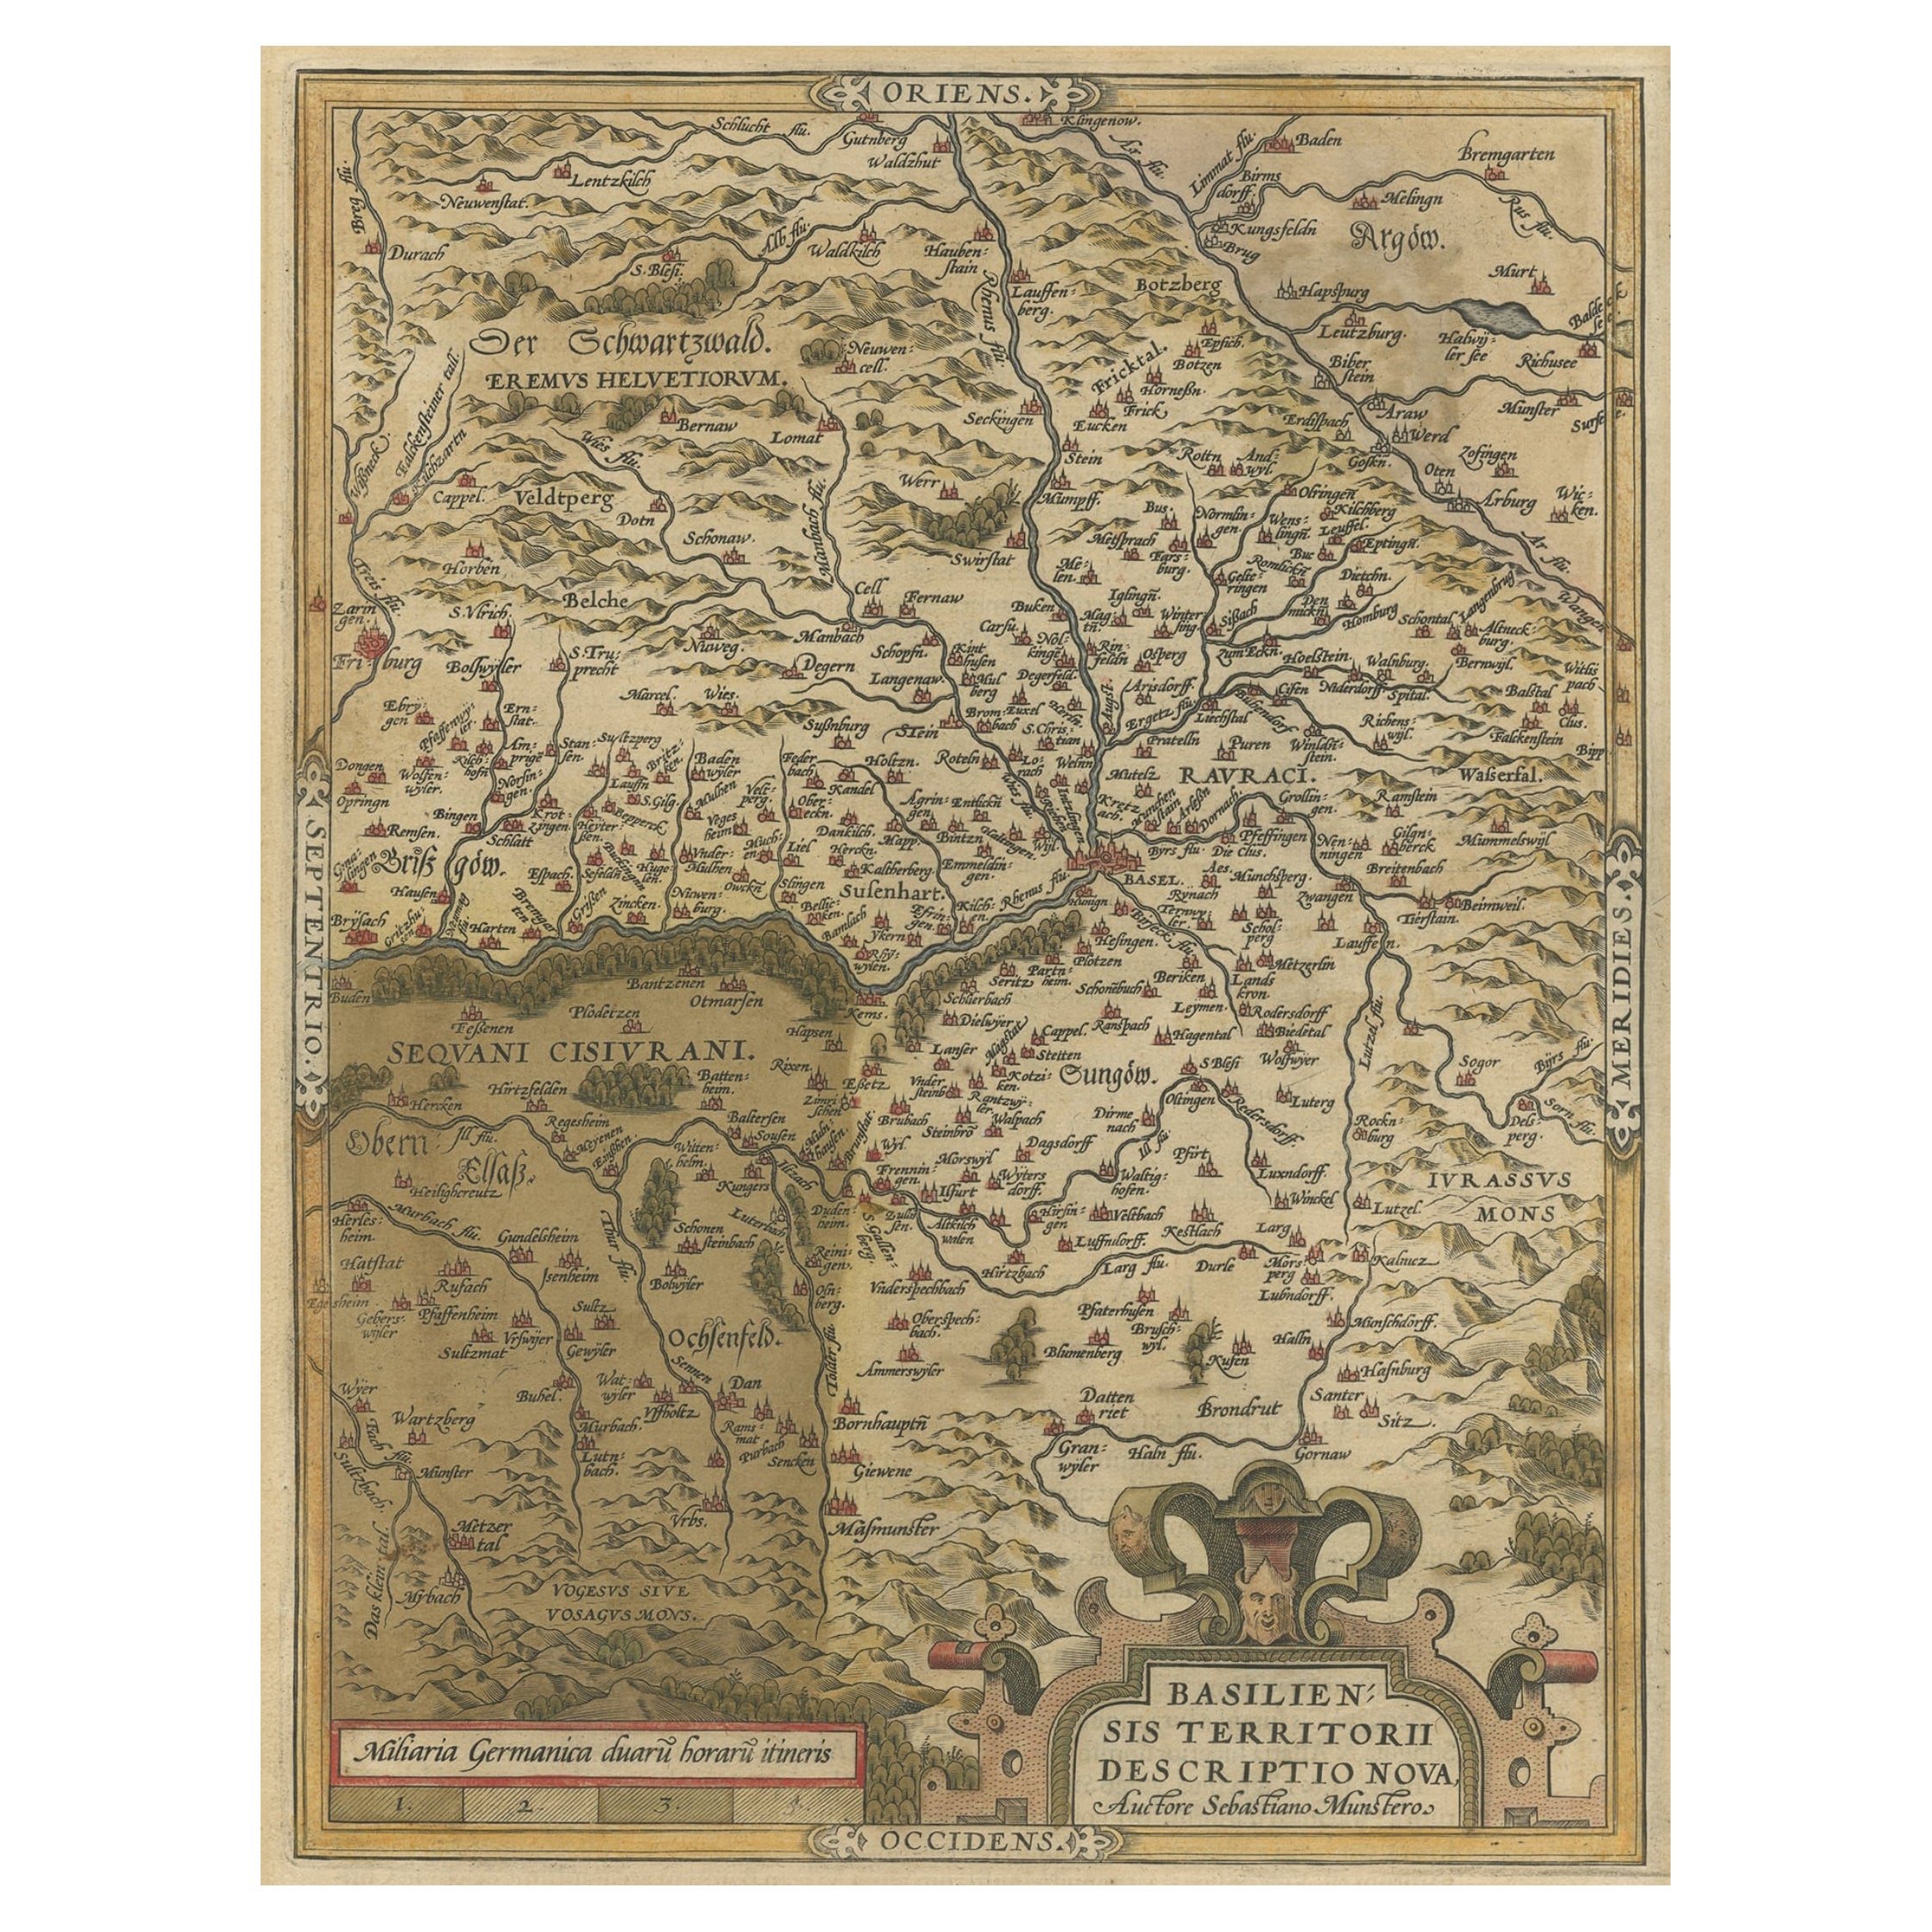 Très ancienne carte originale colorée à la main de la région de Bâle, Suisse, vers 1578